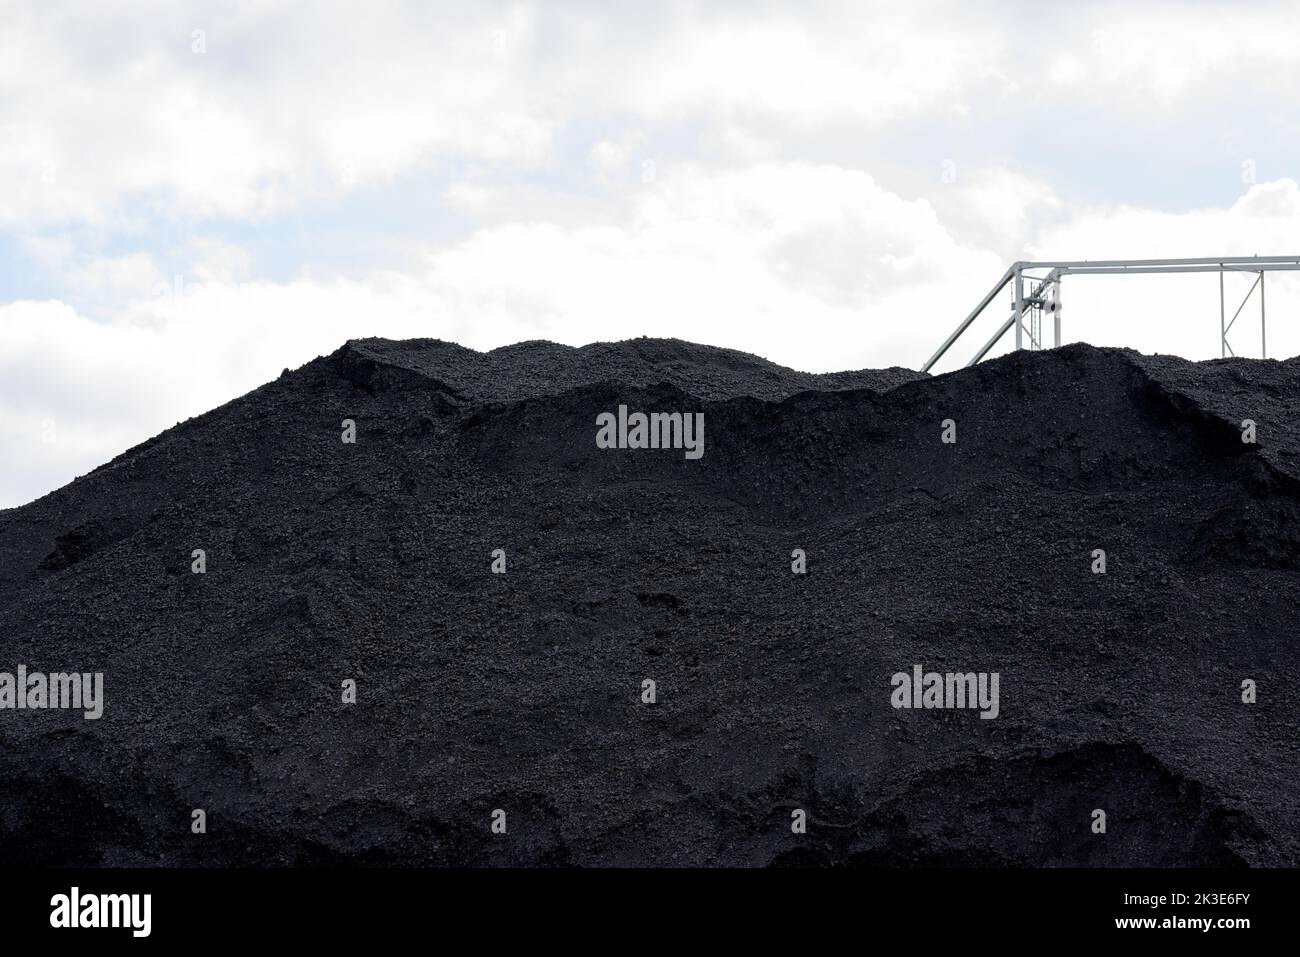 Riesiger Berg aus Steinkohle und einer Stahlkonstruktion für den Transport von Kohle in einem Konzept der Energiekrise und Energieknappheit Stockfoto